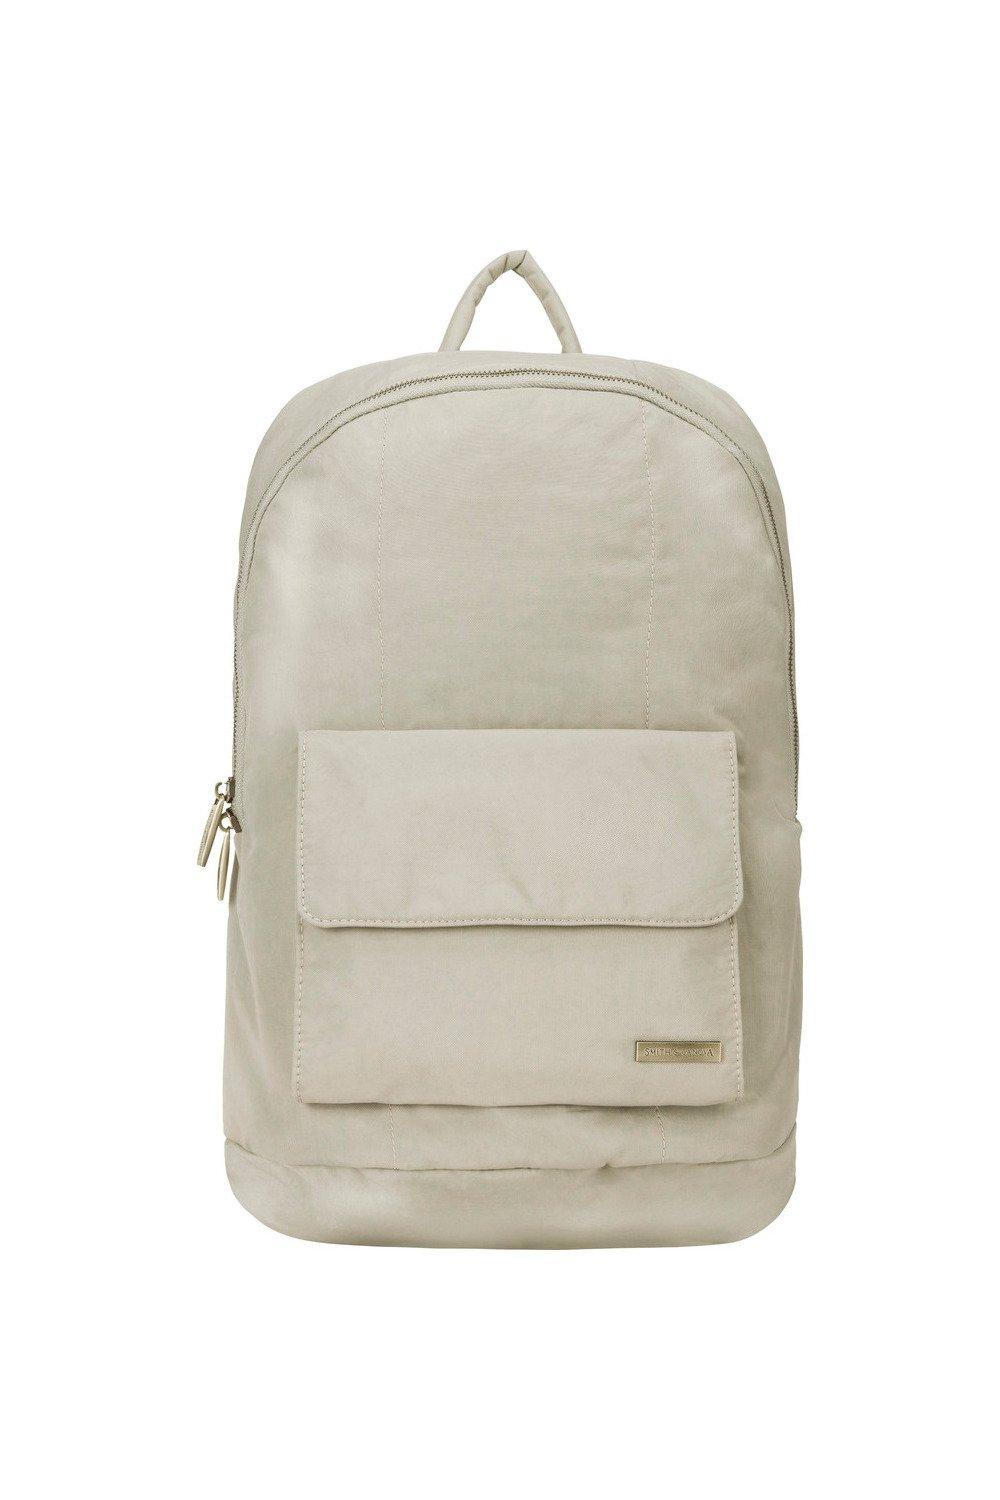 Нейлоновый рюкзак на молнии Smith and Canova, серый сумка для ноутбука 11 13 дюймов шерстяной фетровый чехол для ноутбука чехол для macbook портфель чехол для ноутбука чехол для huawei matebook сумка д